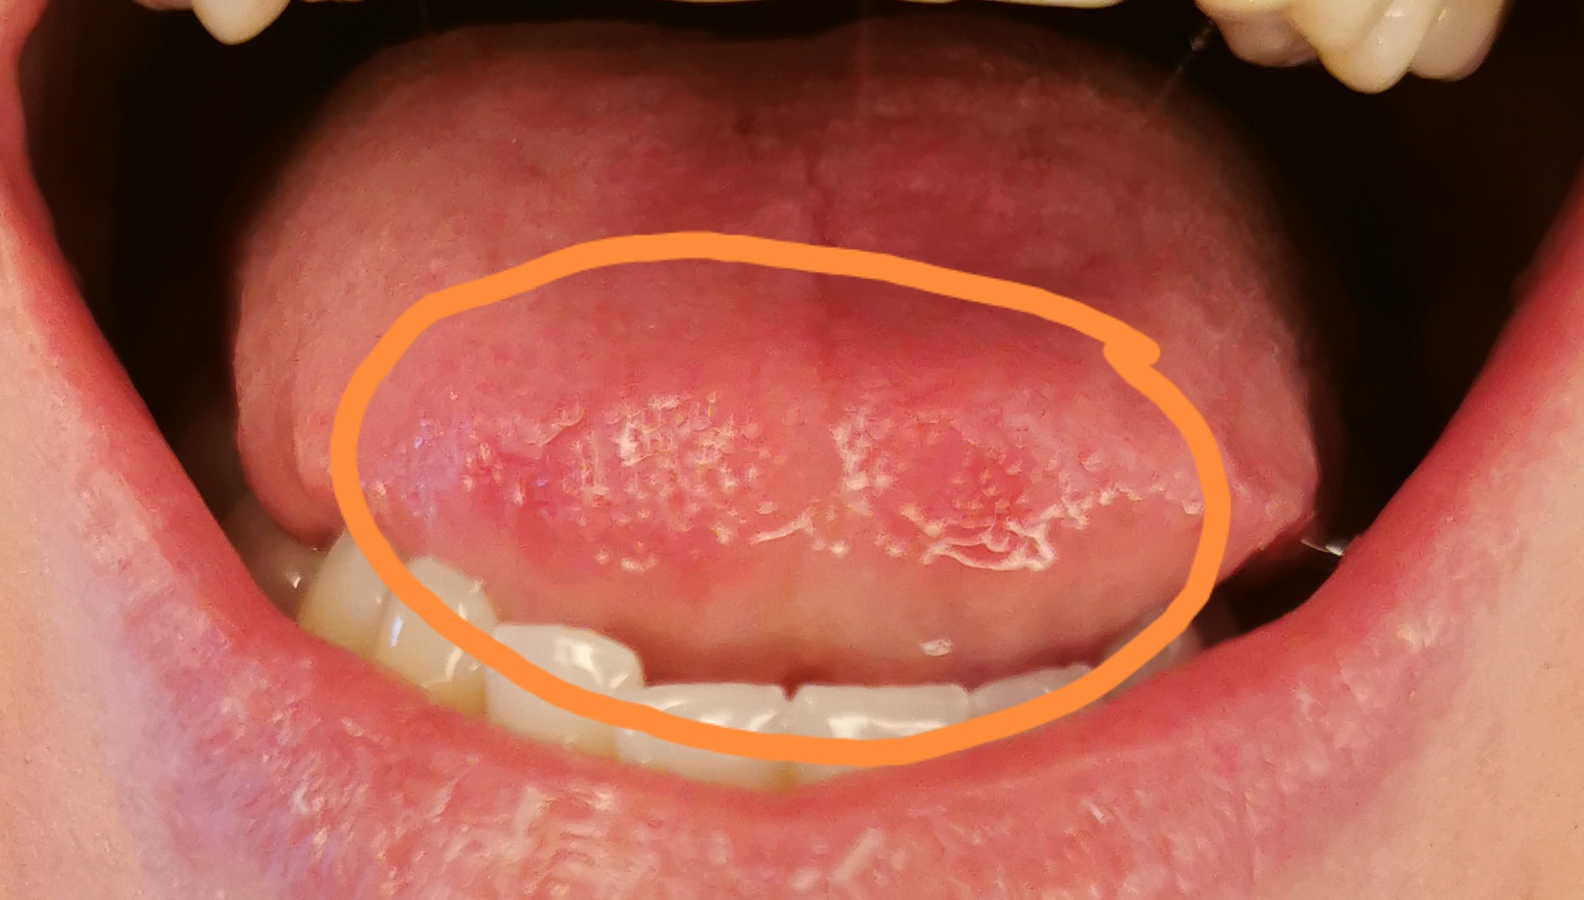 Hilfe! Krebs oder Pilz? Was ist das auf meiner Zunge? - Denta Beaute